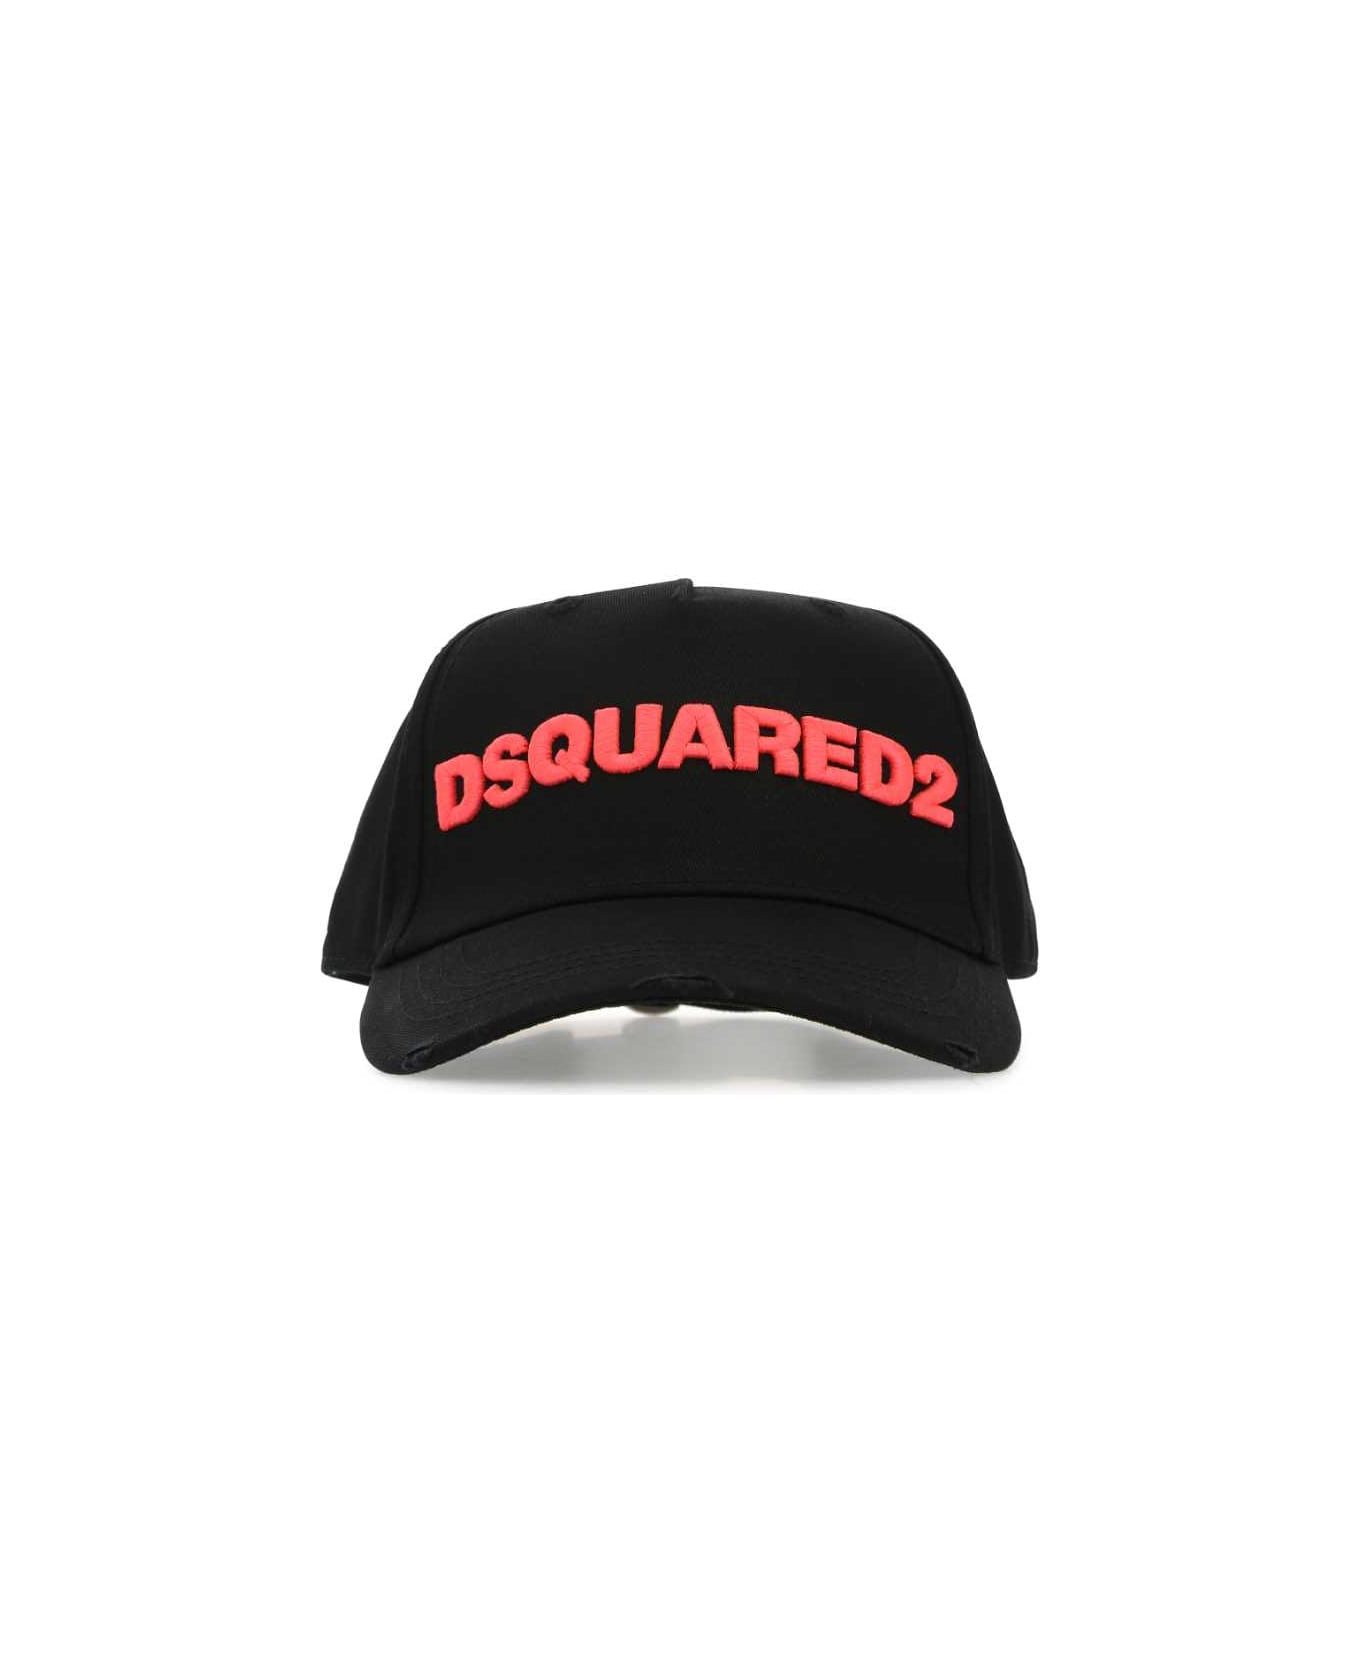 Dsquared2 Black Cotton Baseball Cap - M221 帽子